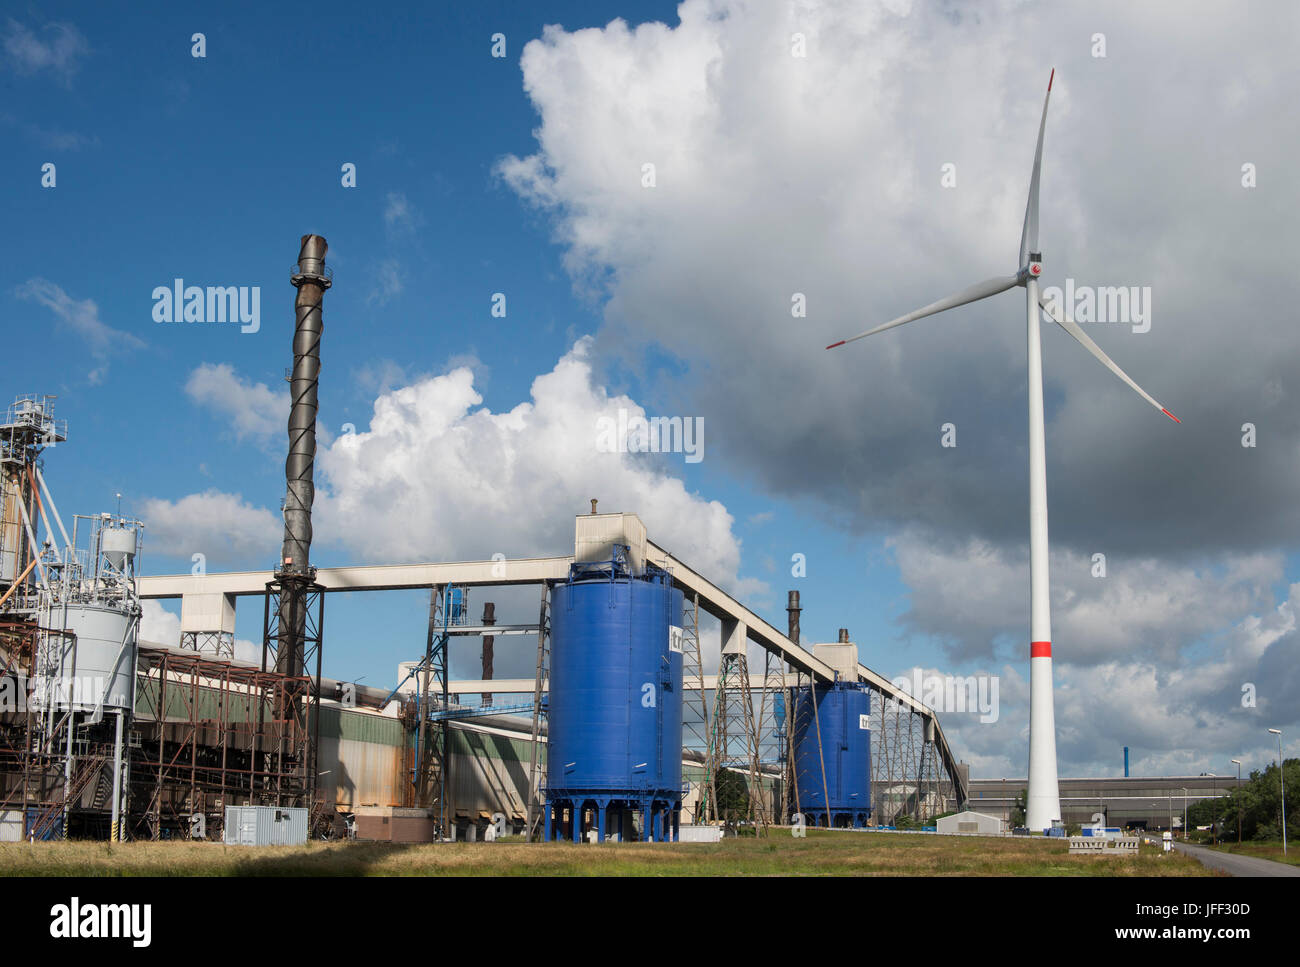 Allemagne Hambourg, wind turbine Siemens SWT-3.0-113 de fournisseur d'énergie municipale Hamburg Energie chez Trimet aluminium company / zone DEUTSCHLAND, Hambourg, Trimet Aluminium Werk Gelaende, Siemens Windkraftanlage SWT-3.0-113 des kommunalen Stromerzeuger Hamburg Energie Banque D'Images